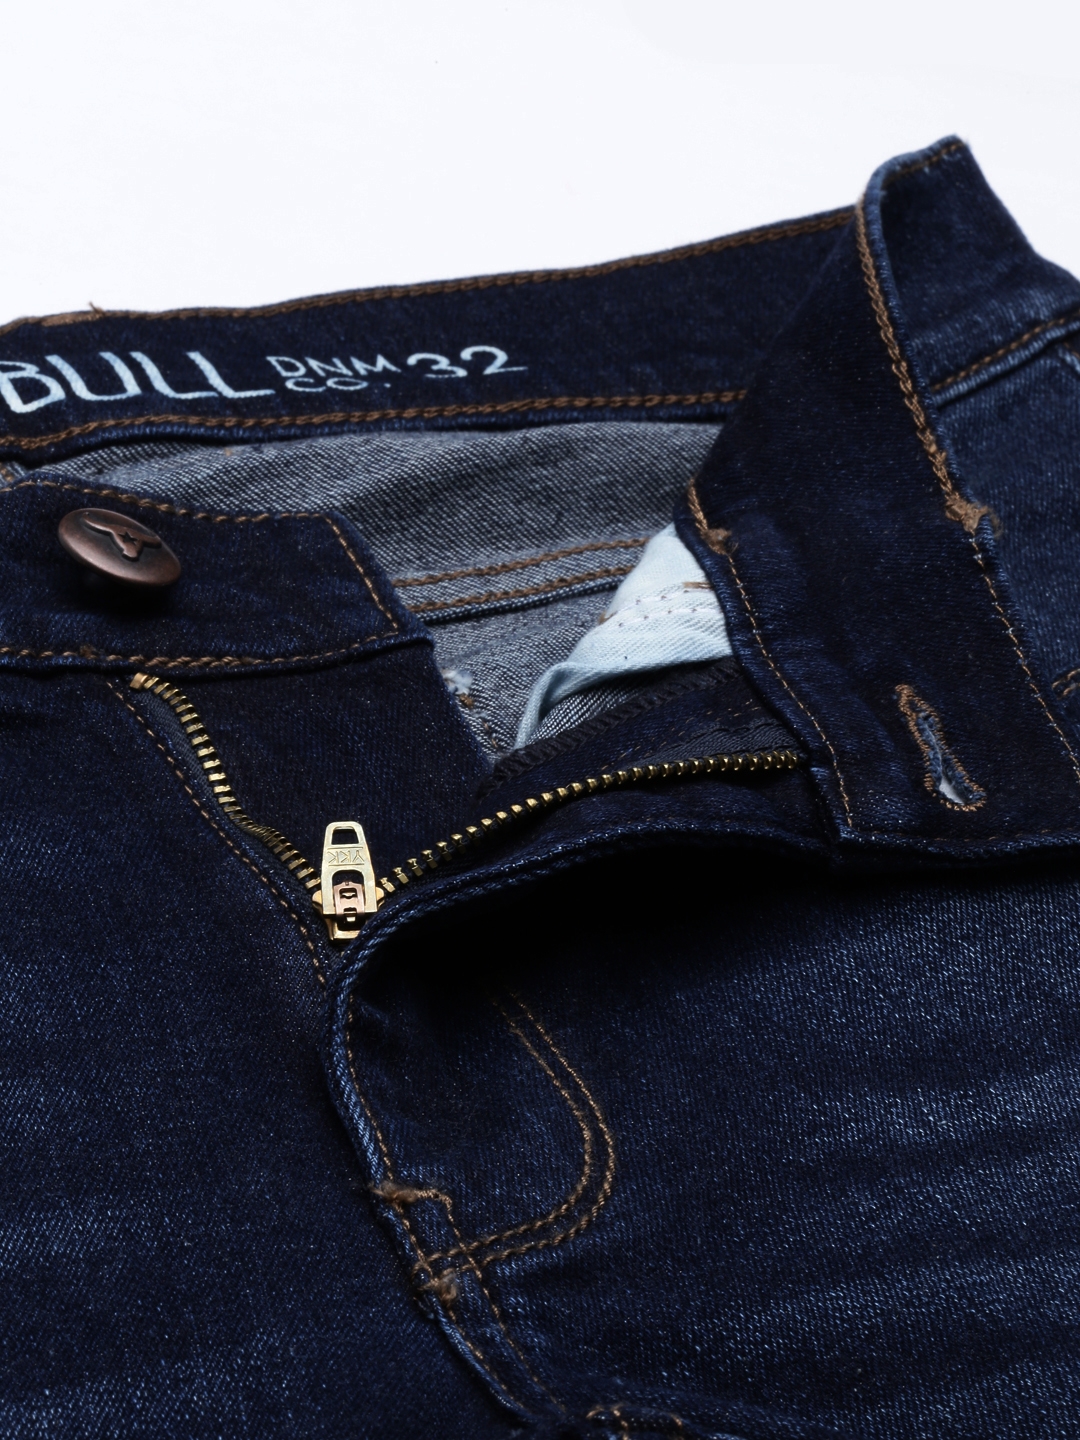 American Bull | American Bull Mens DK.Blue Denim Jeans 5